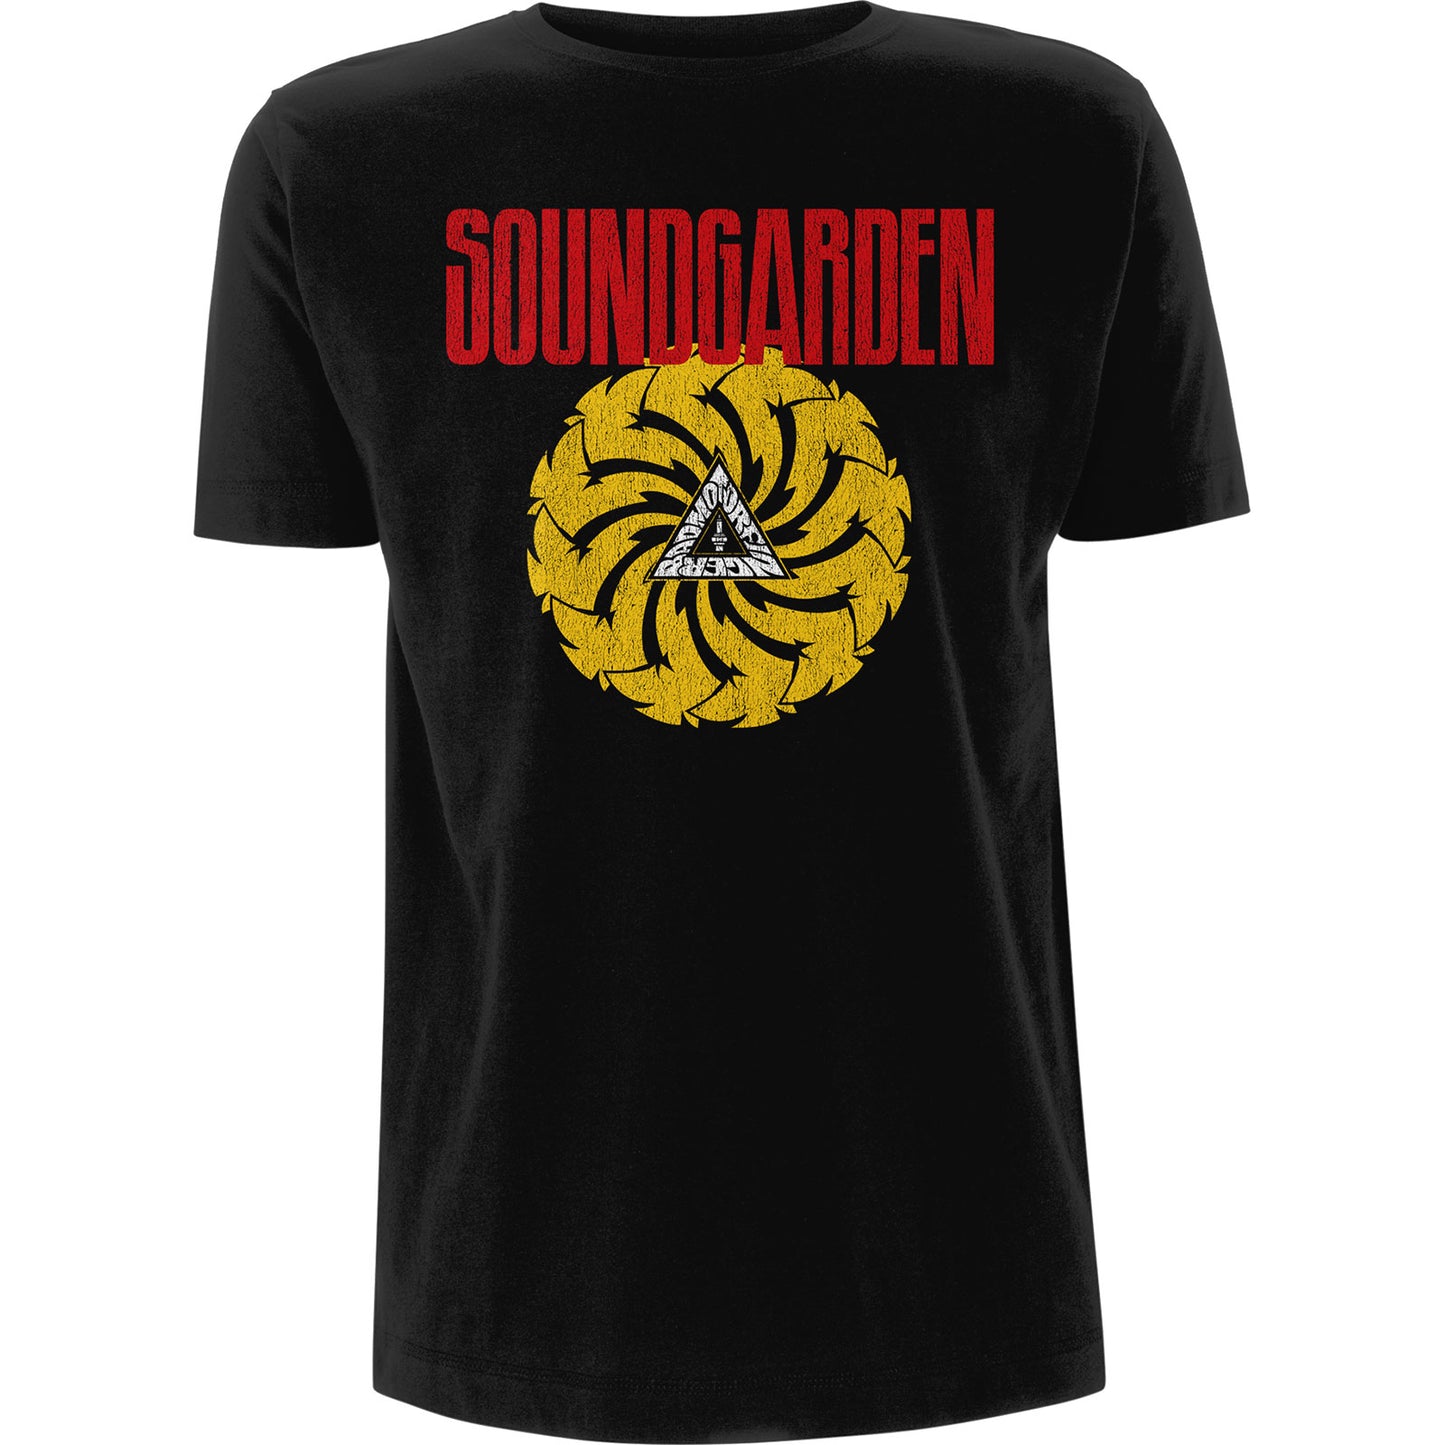 Soundgarden T-Shirt: Badmotorfinger V.3